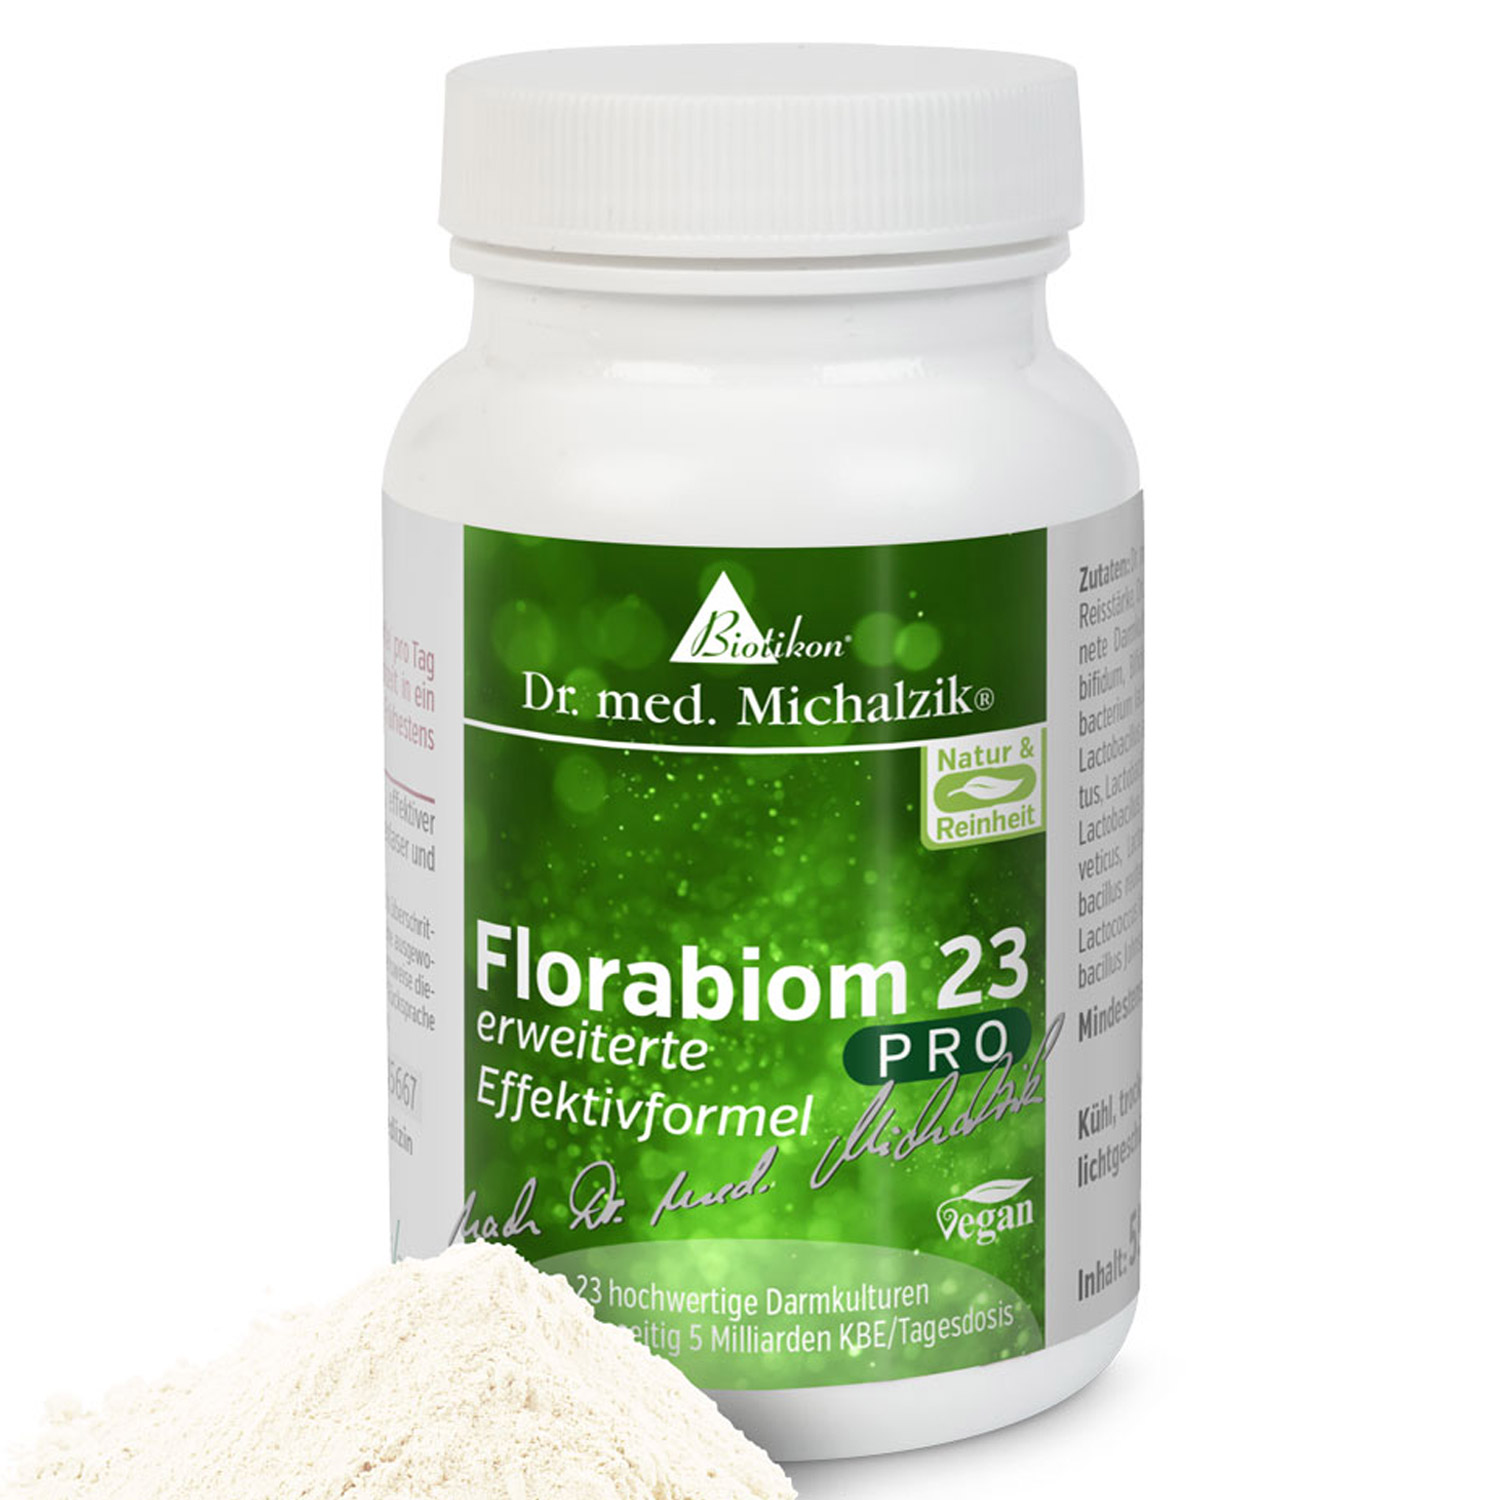 Florabiom 23 PRO von Biotikon - 55g